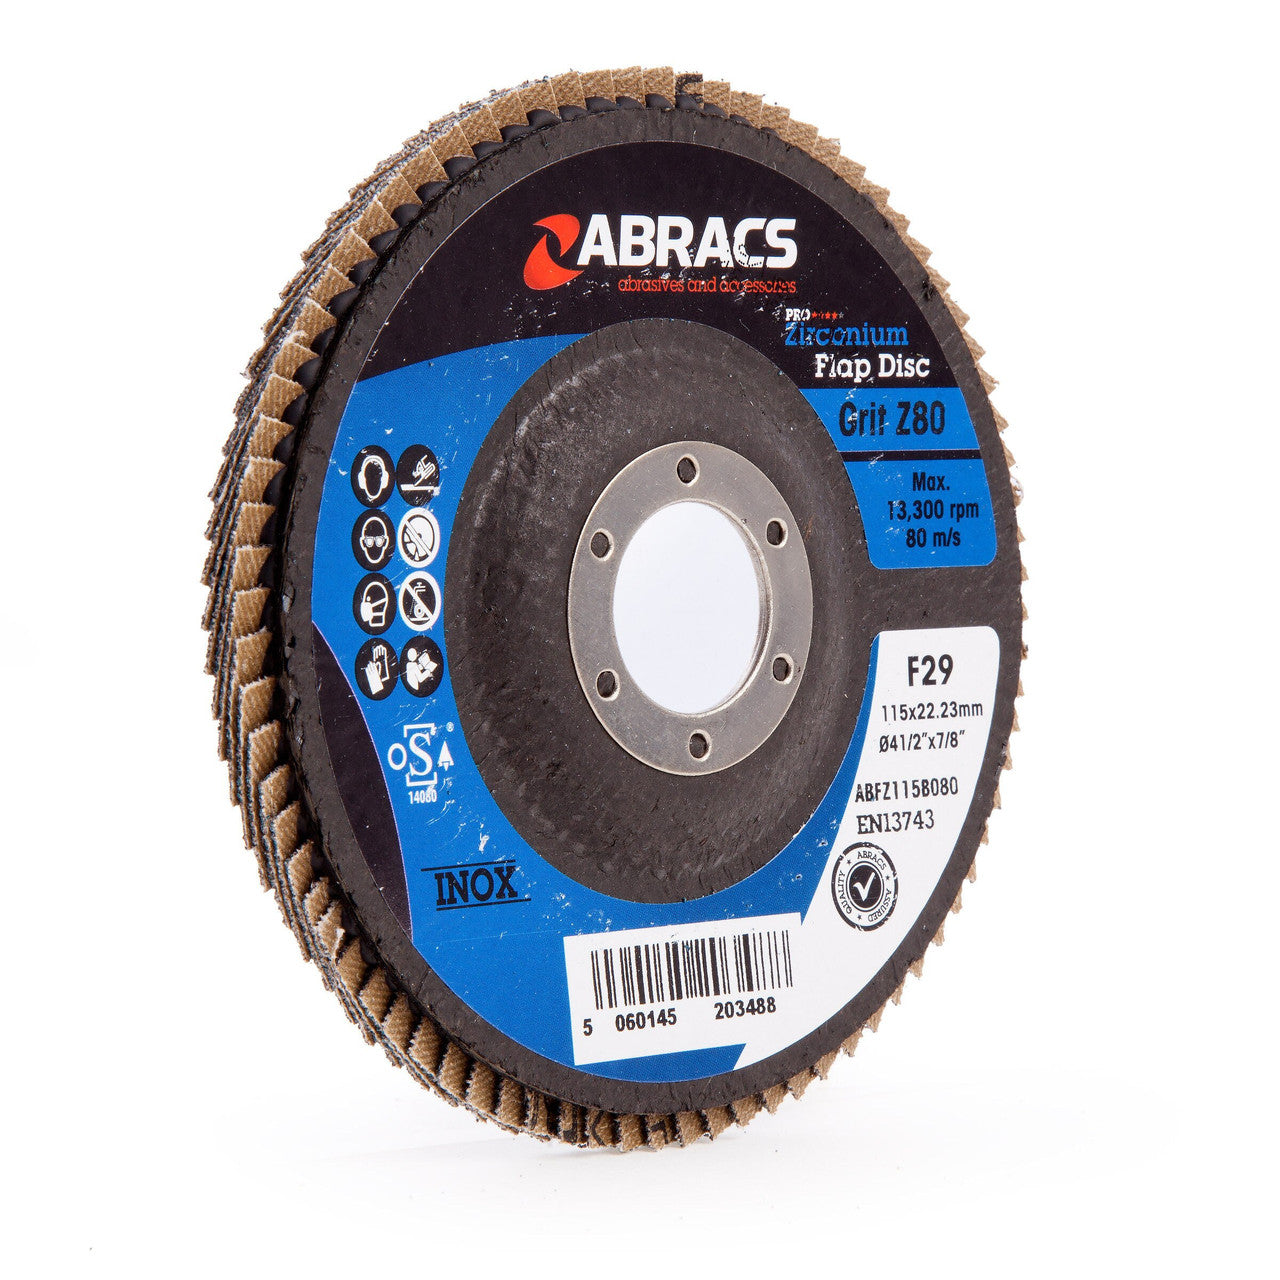 Abracs ABFZ115B080 Pro Zirconium Flap Disc 115mm 80 Grit (5 Pack)